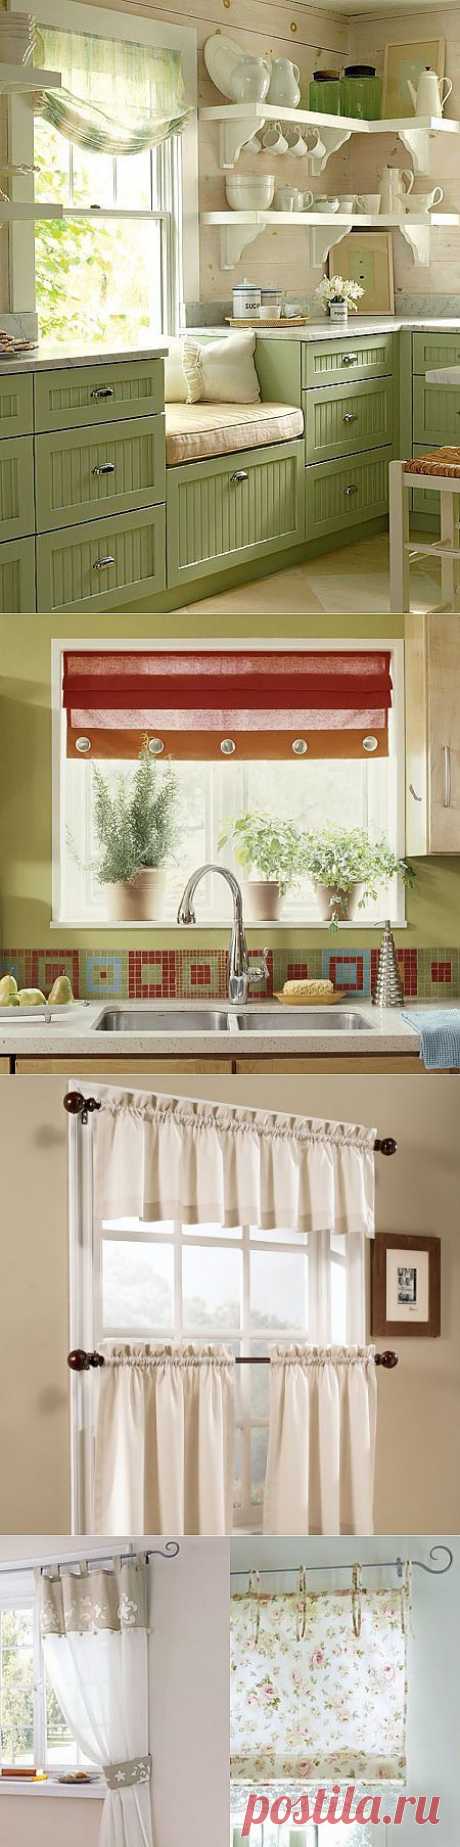 Оригинальное оформление окна на кухне | Интерьер и Дизайн